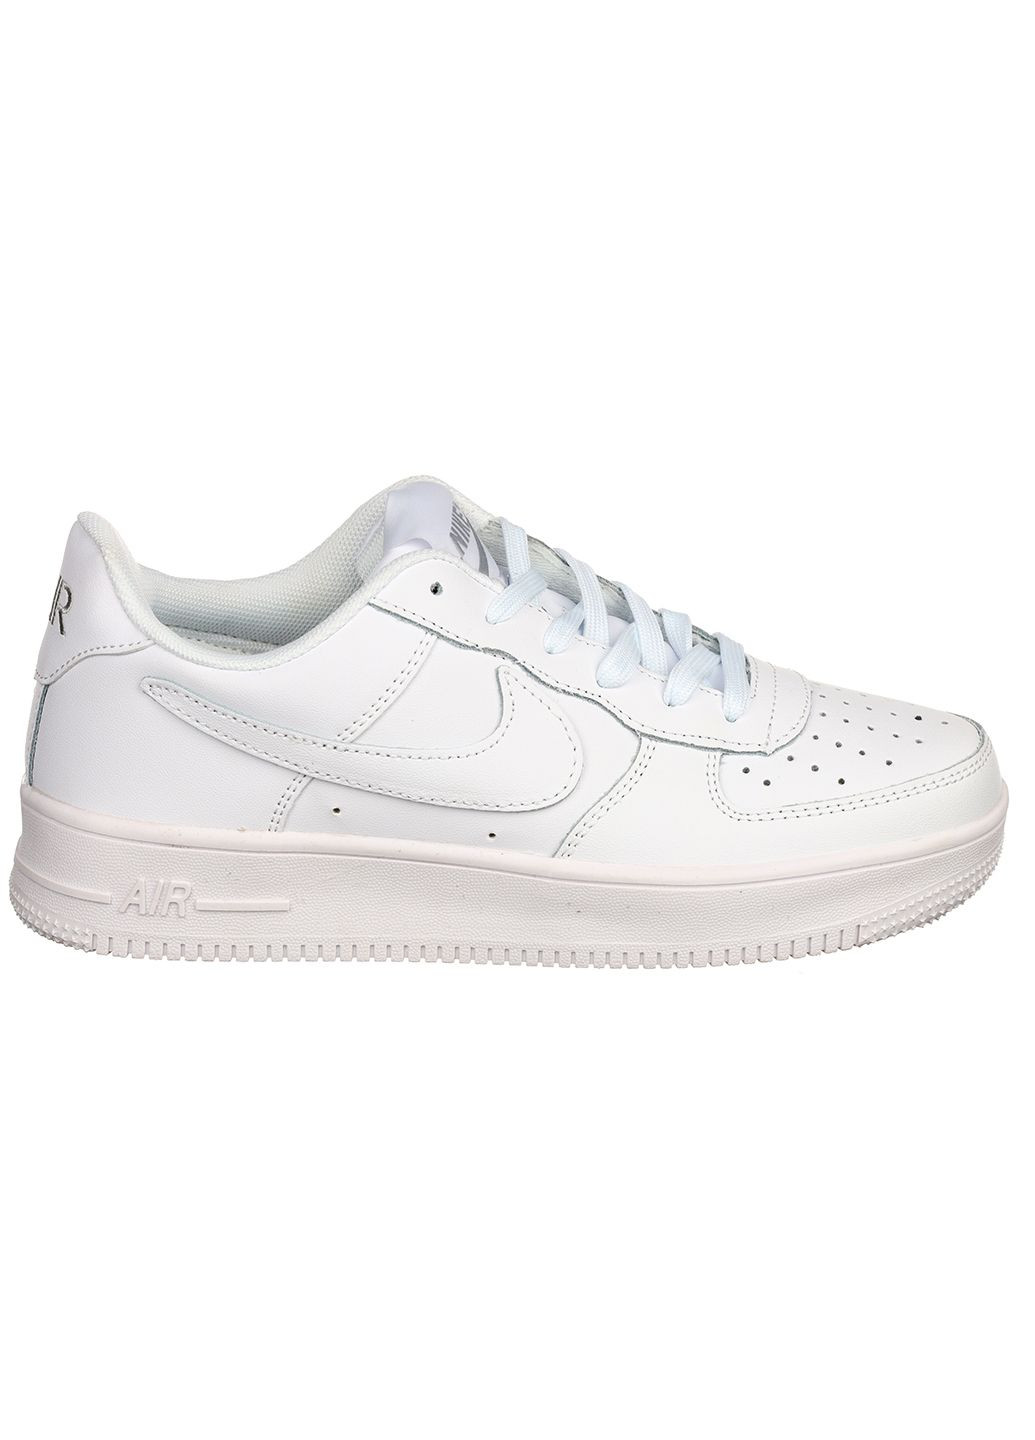 Білі осінні жіночі кросівки g3450-1 Classica